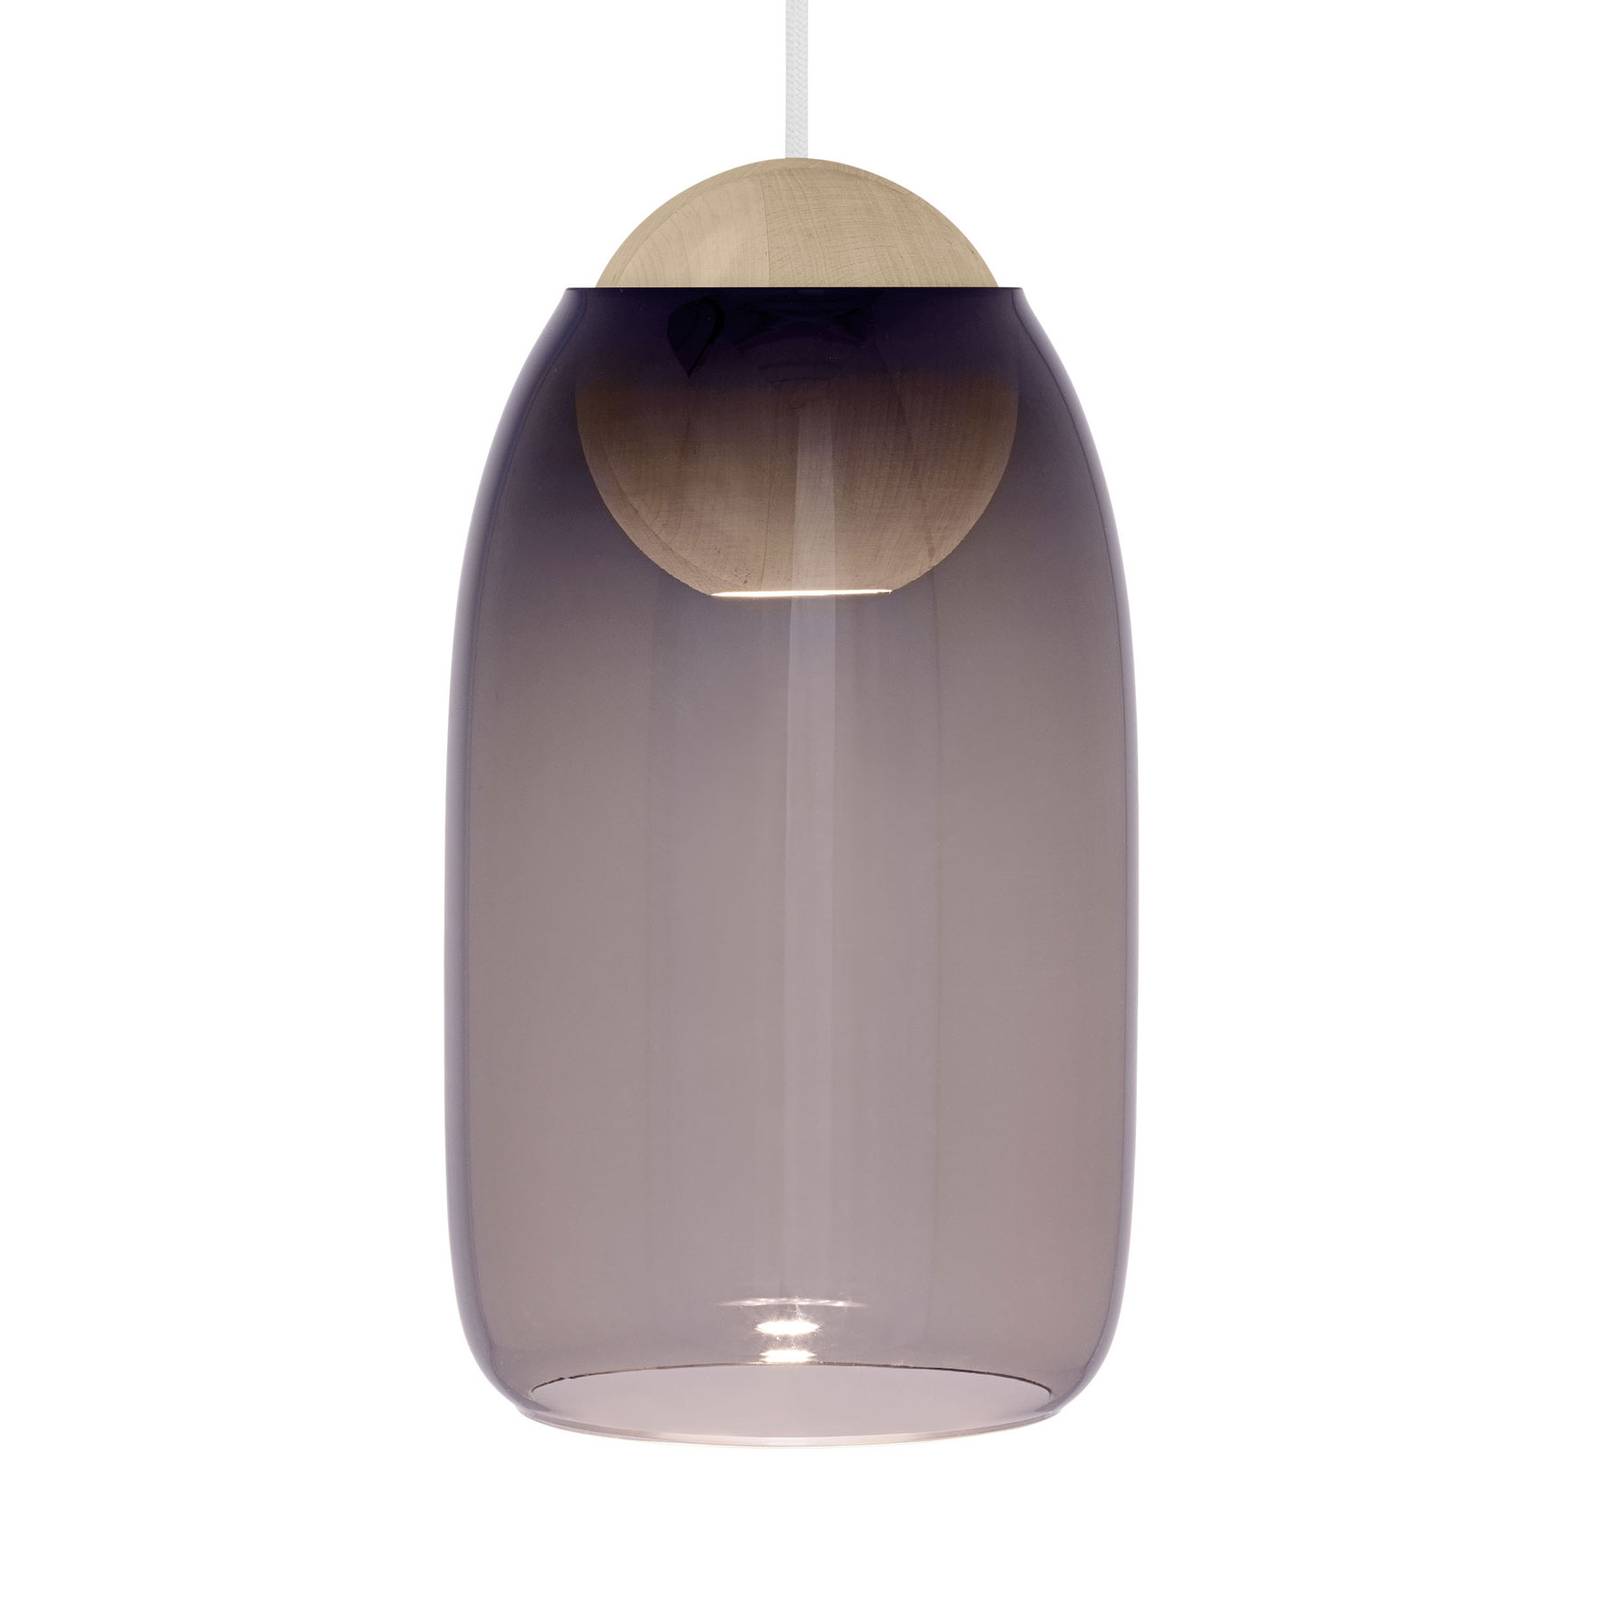 Mater Liuku Ball häng trä natur glas violett